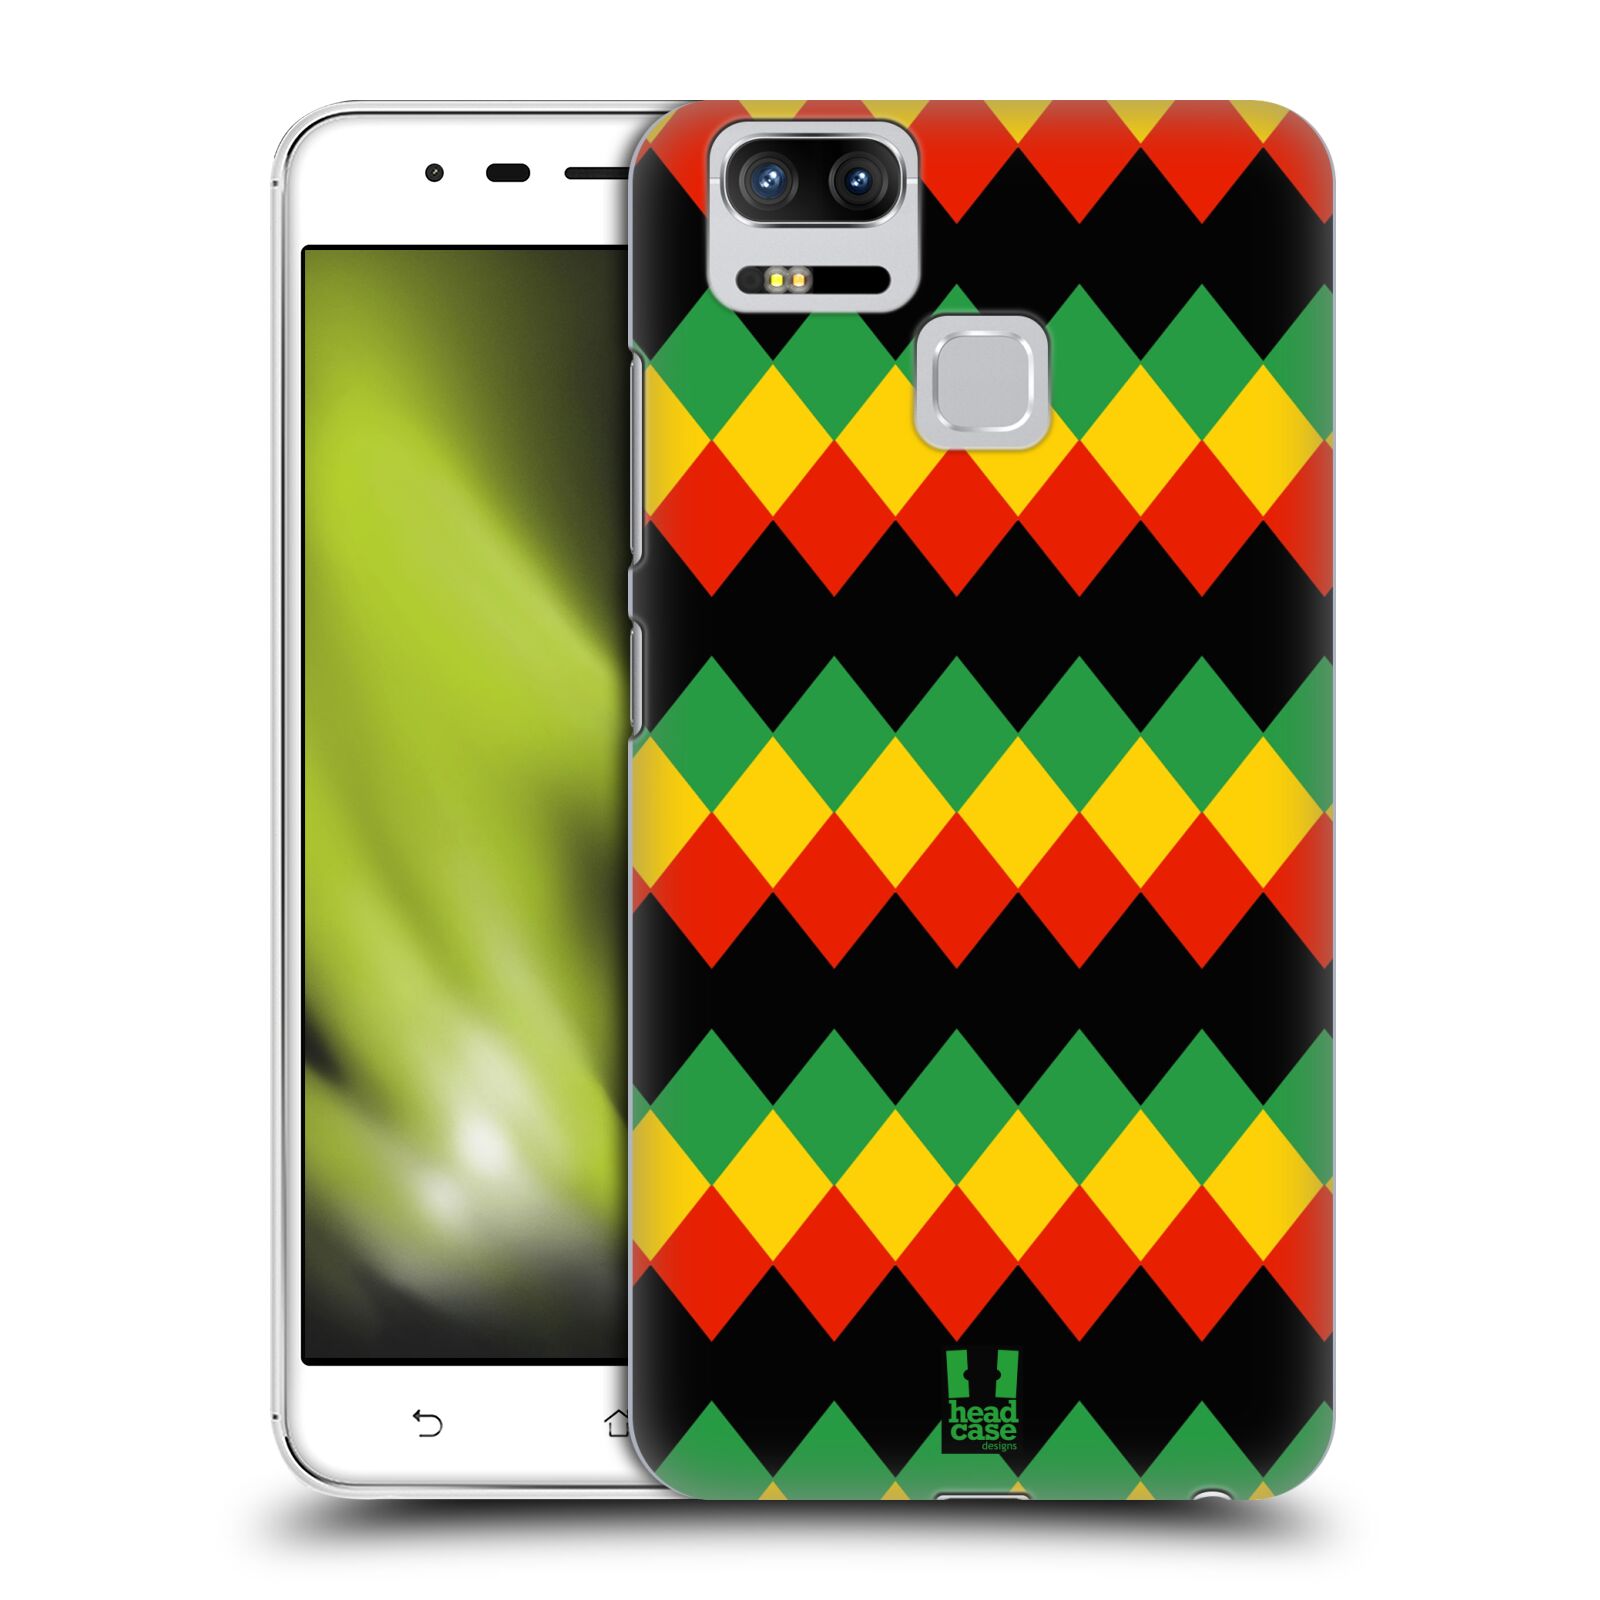 HEAD CASE plastový obal na mobil Asus Zenfone 3 Zoom ZE553KL vzor Rasta barevné vzory DIAMANT